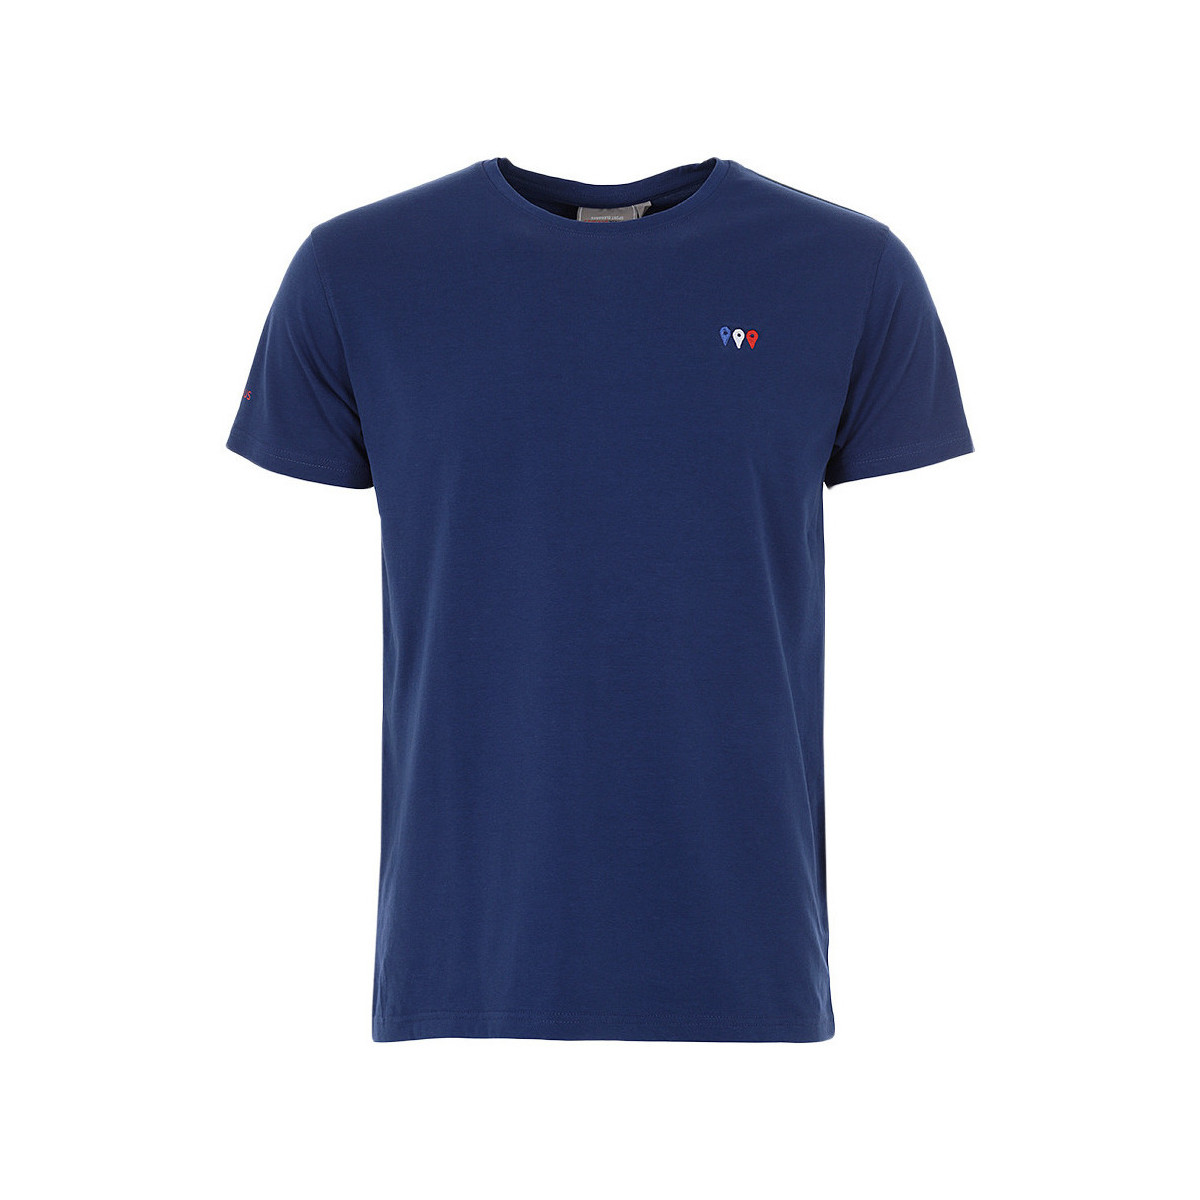 tekstylia Męskie T-shirty z krótkim rękawem Degré Celsius T-shirt manches courtes homme CERGIO Marine